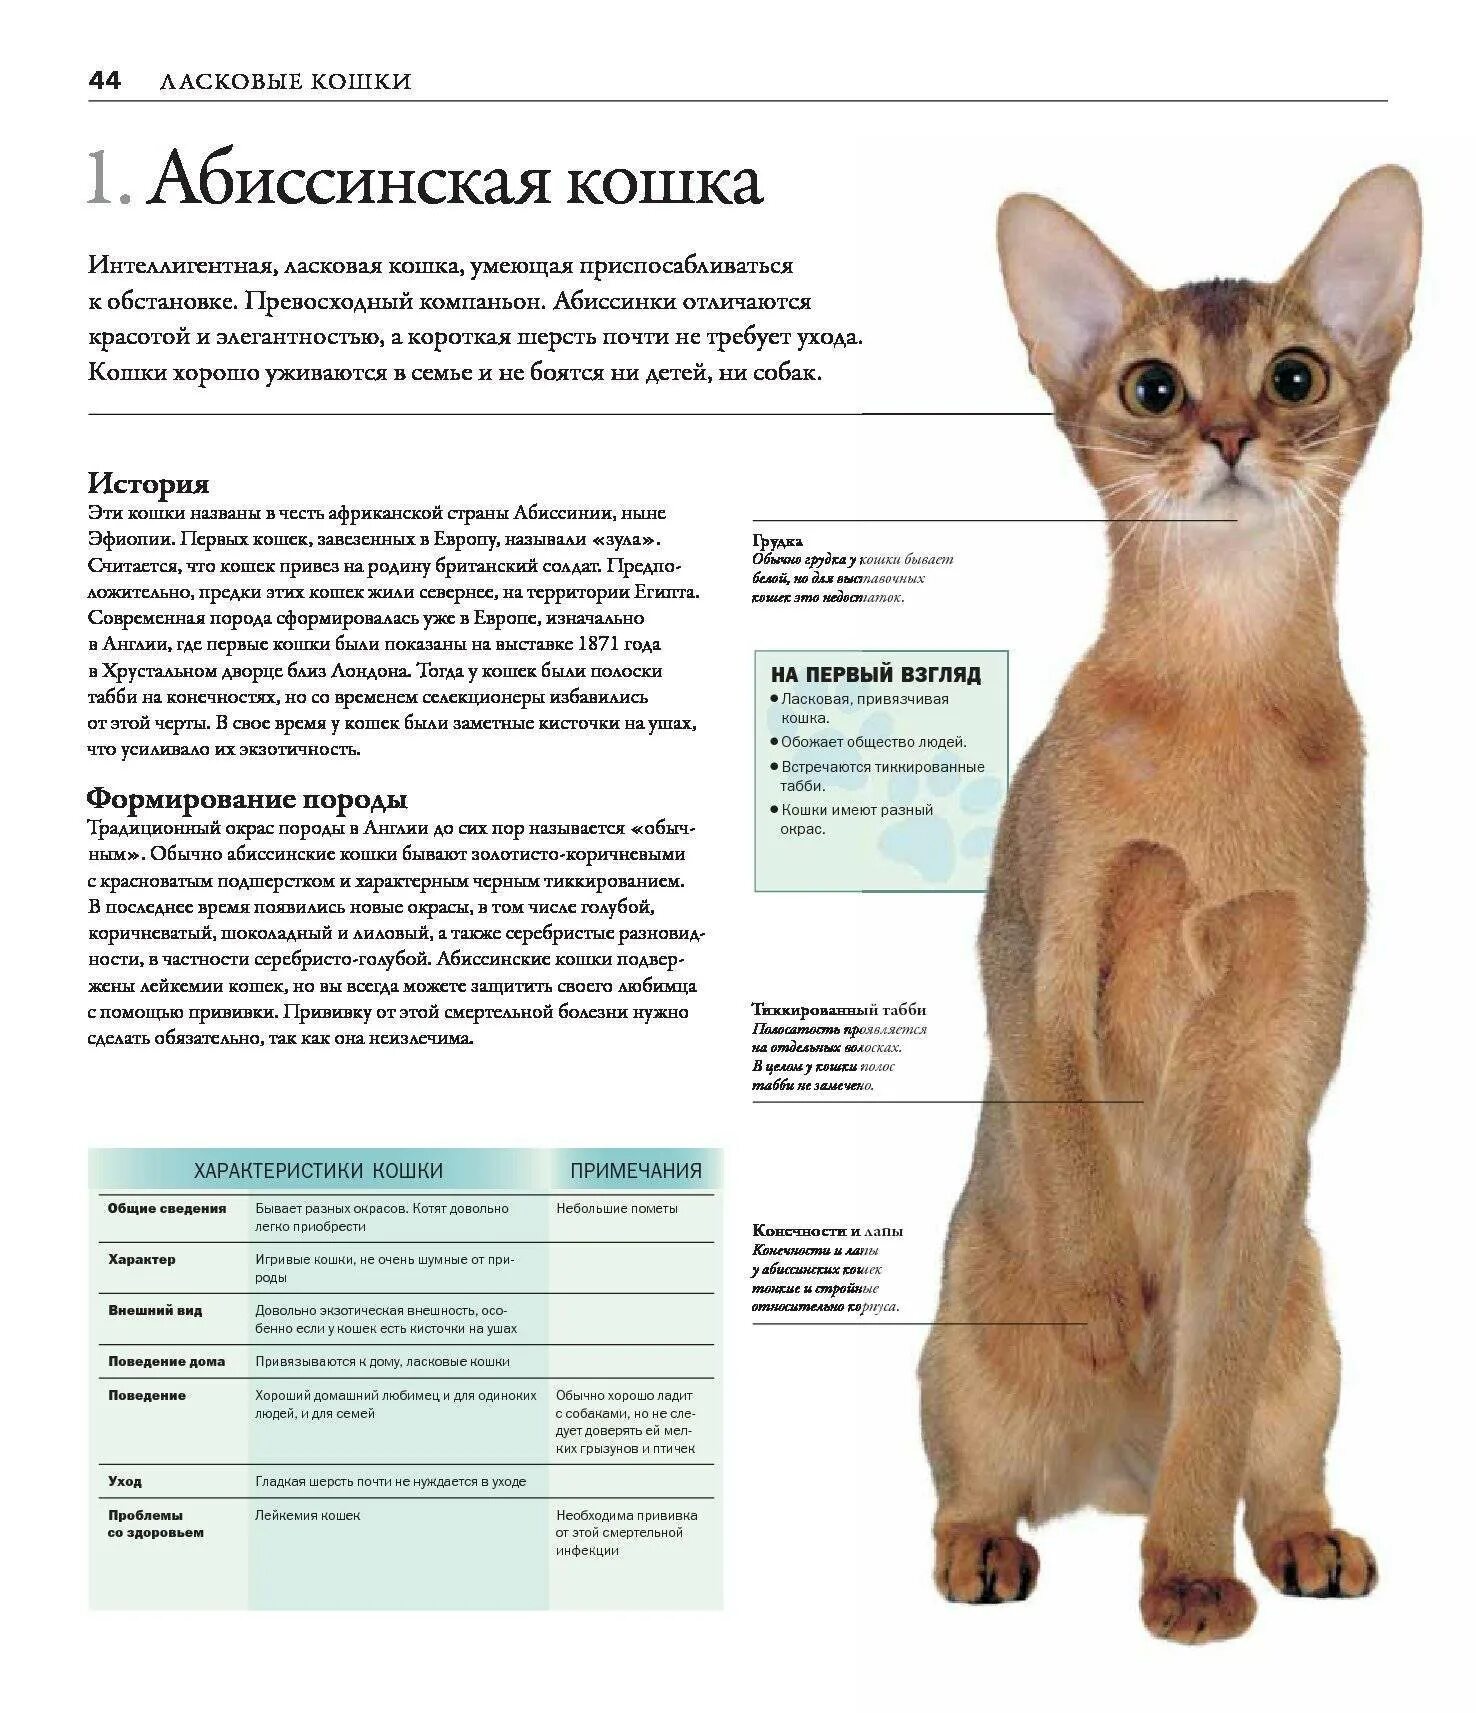 Описать породу кошки Абиссинская. Абиссинская кошка описание породы. Норма веса Абиссинской кошки. Абиссинская кошка стандарт. Рассмотрите фотографию кошки породы абиссинская и выполните